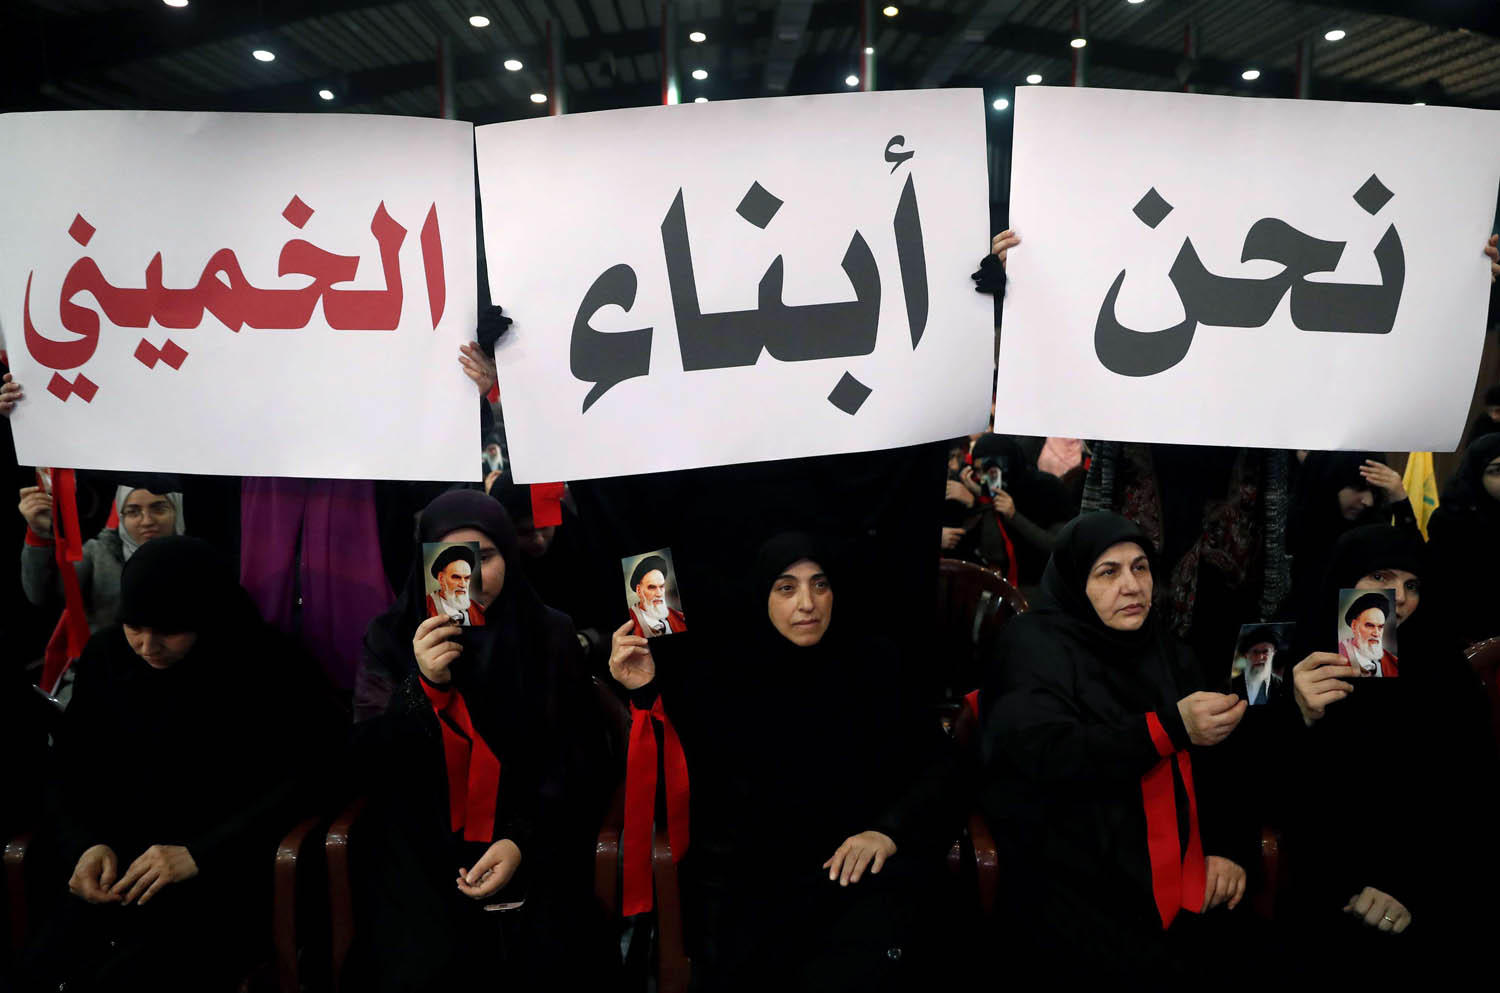 لبنانيات من حزب الله يرفعن شعارات مؤيدة لإيران في تجمع ببيروت